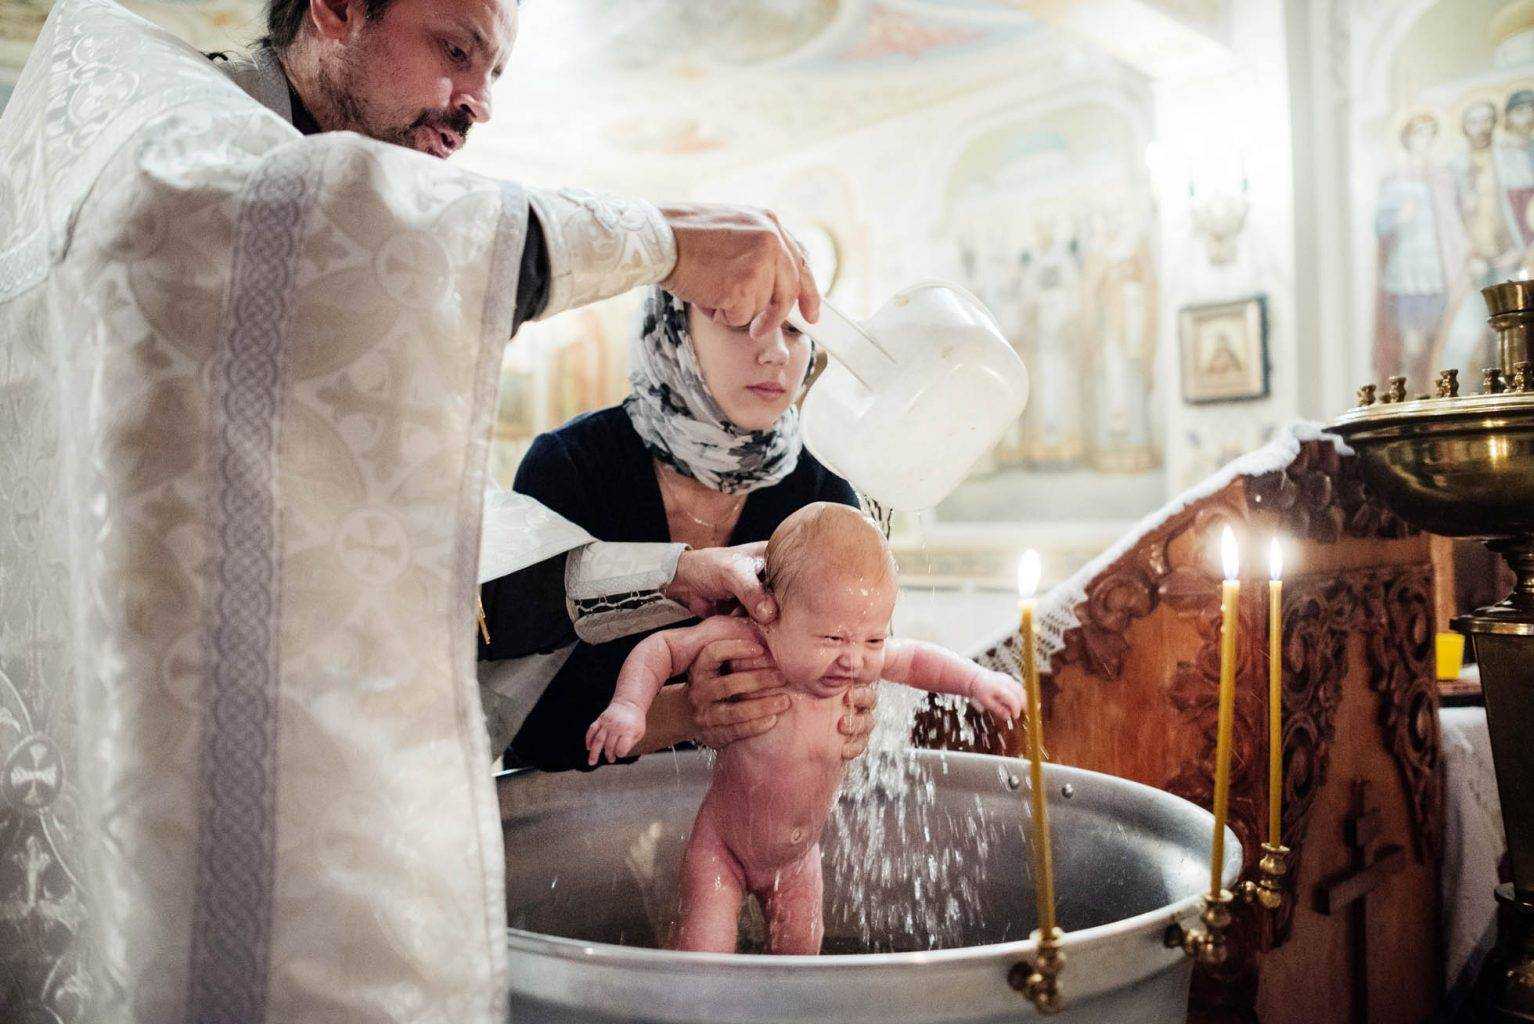 Крещение ребенка в церкви. молитва на крещение ребенка в церкви. что нужно знать о крещении родителям, крестным, что нужно знать если нет крестных?. таинство крещения ребенка: что нужно знать родителя